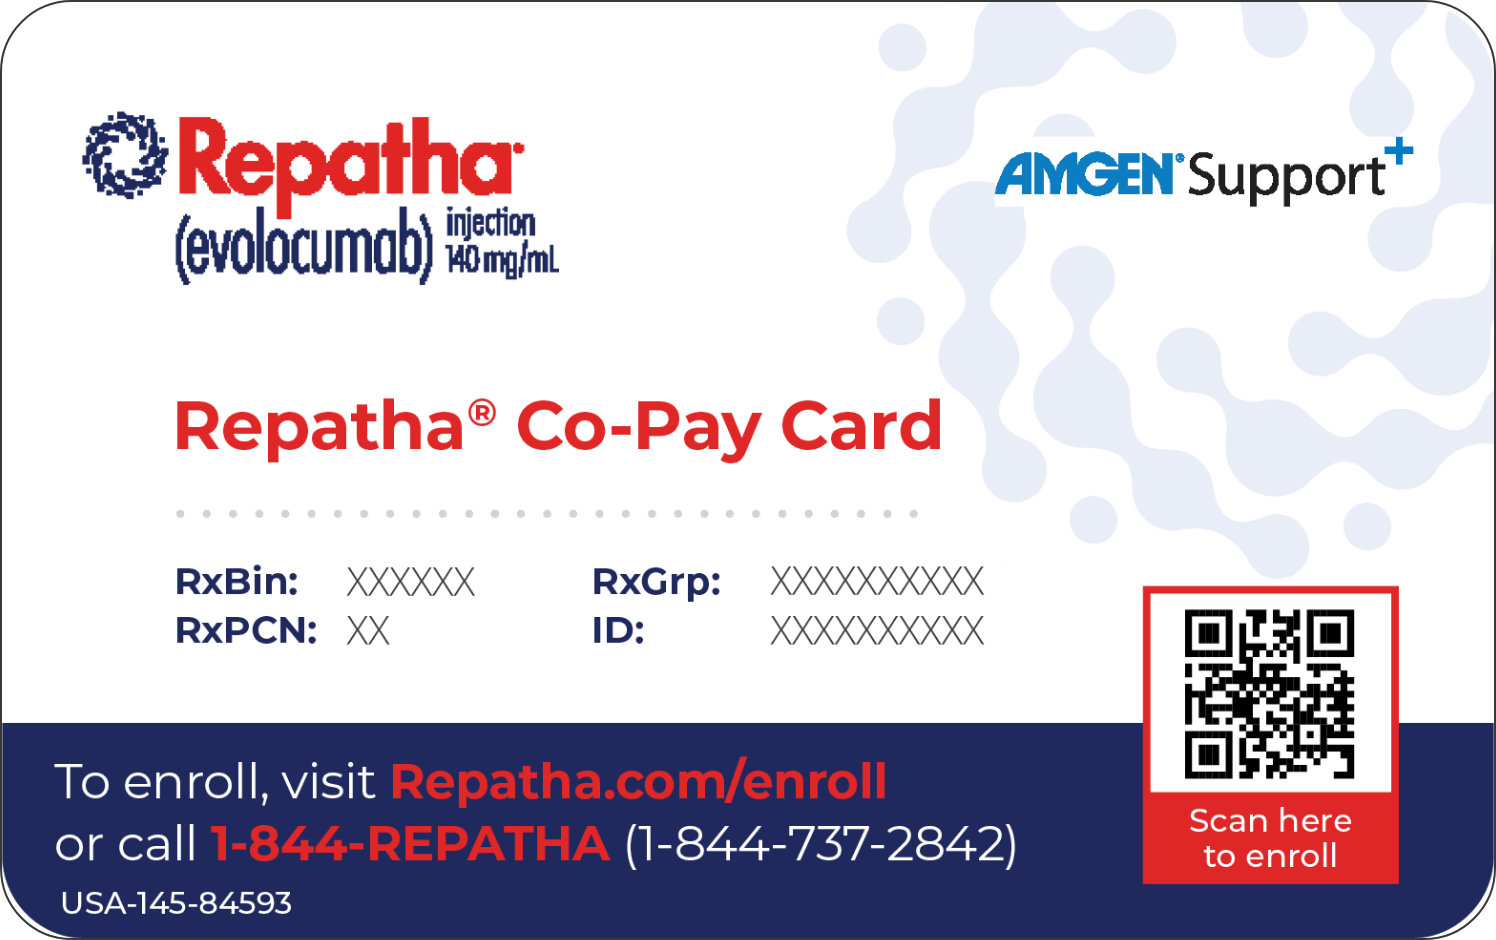 Repatha® (evolocumab) Co-Pay Card